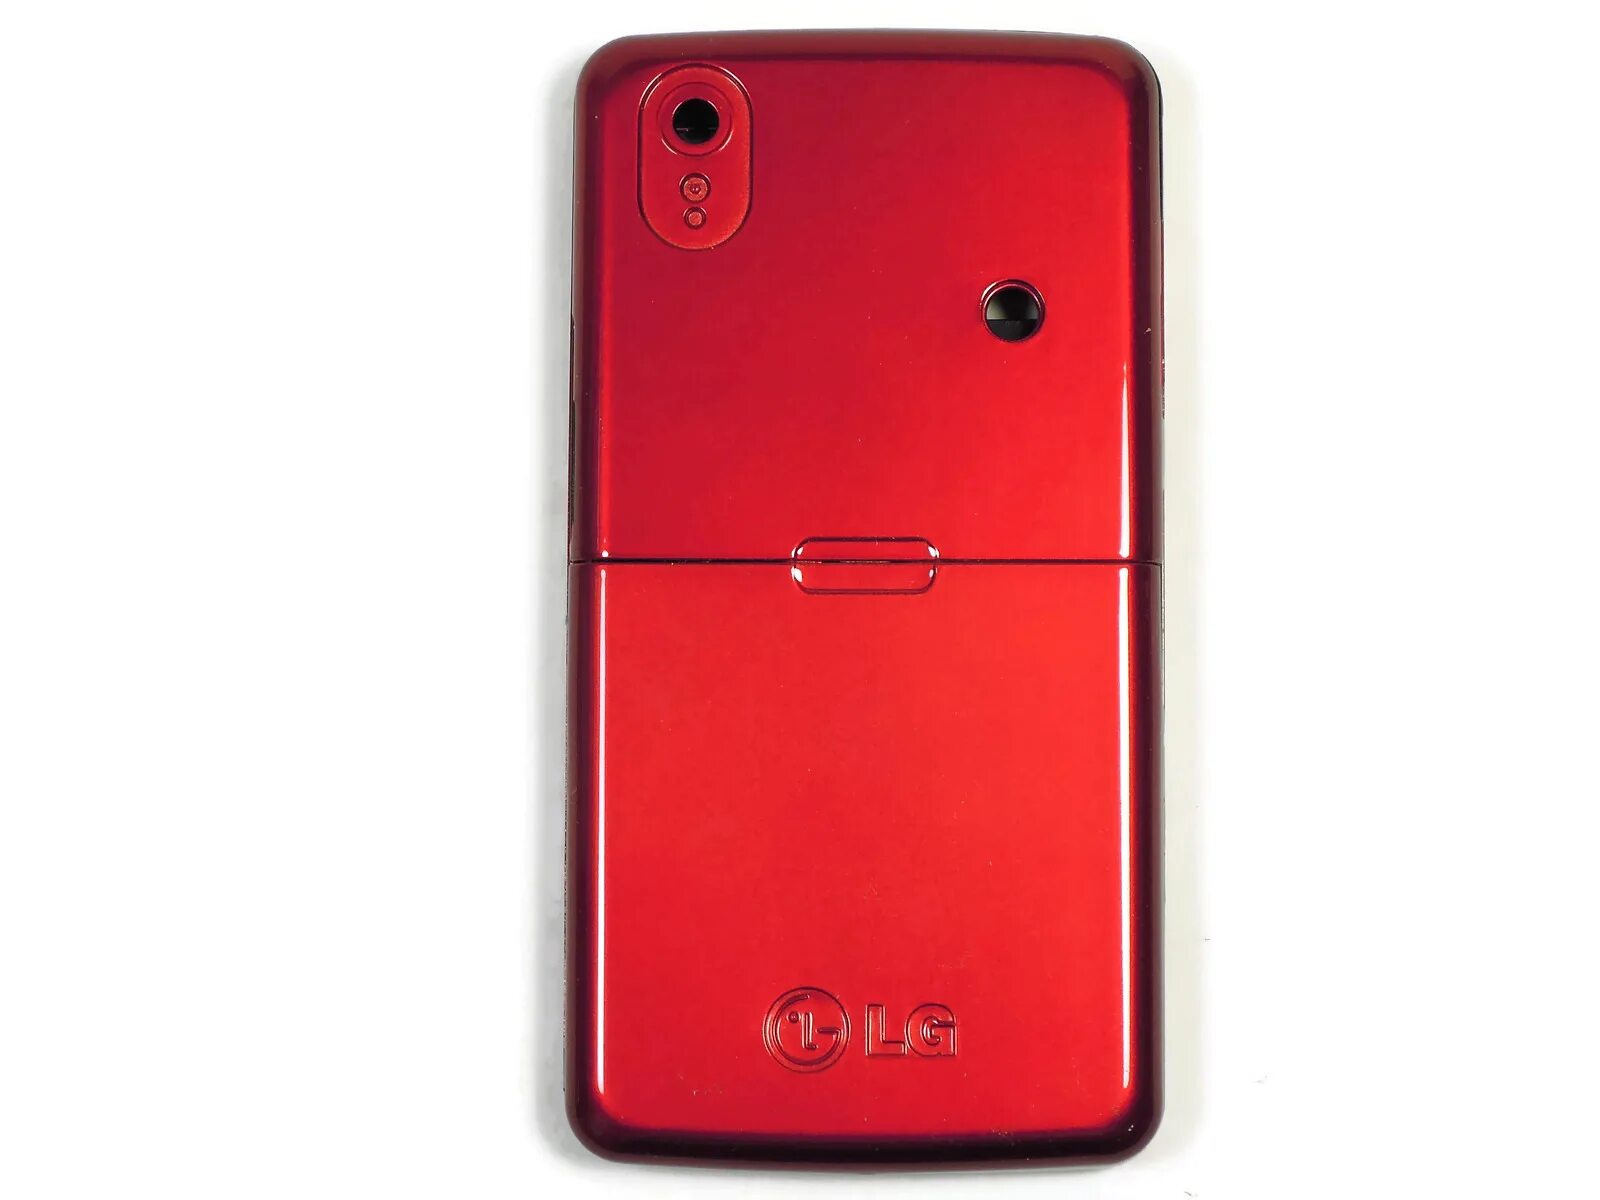 LG kp500. Лджи КП 500. LG k500 со стилусом. Корпус красные 500руб. Красный хай